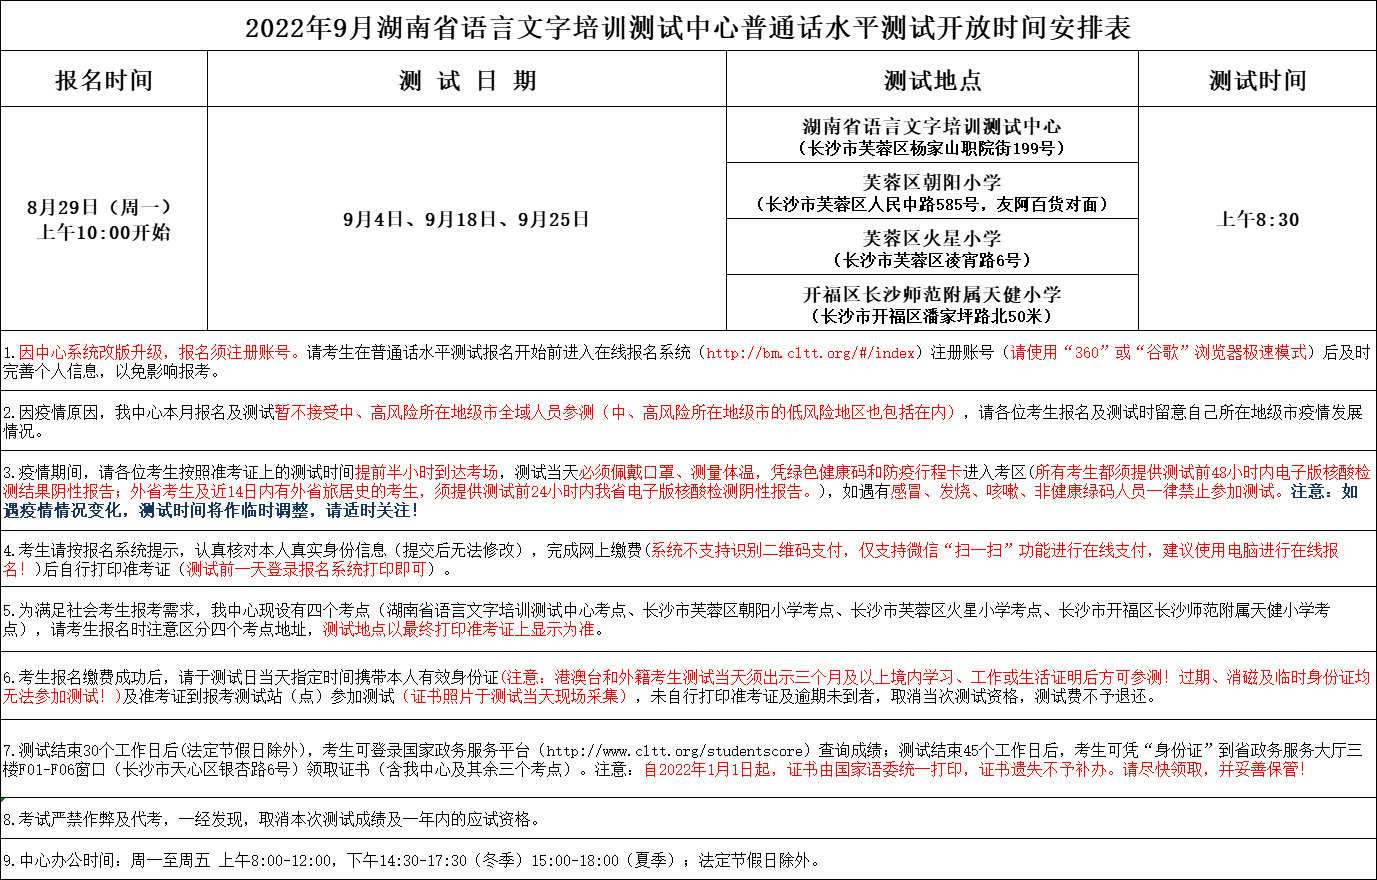 9月湖南省语言文字培训测试中心普通话水平测试开放时间安排表